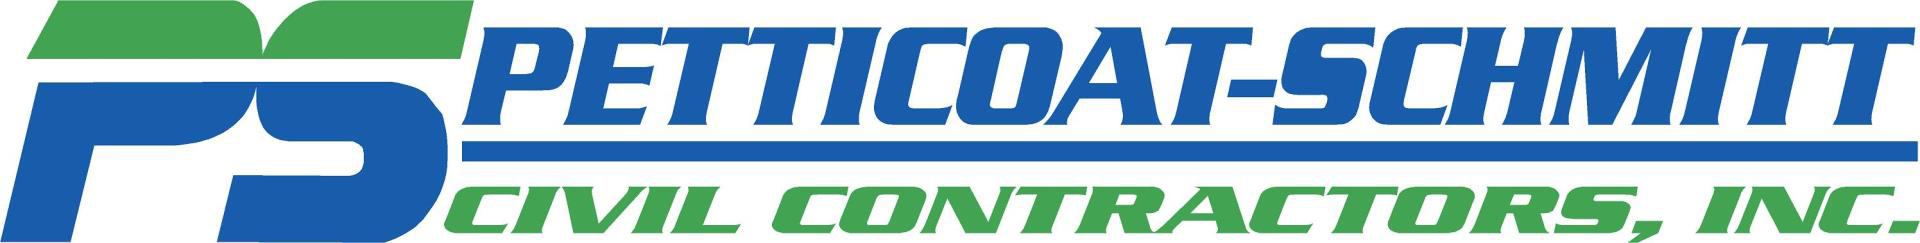 Petticoat-Schmitt Civil Contractors, Inc. Logo